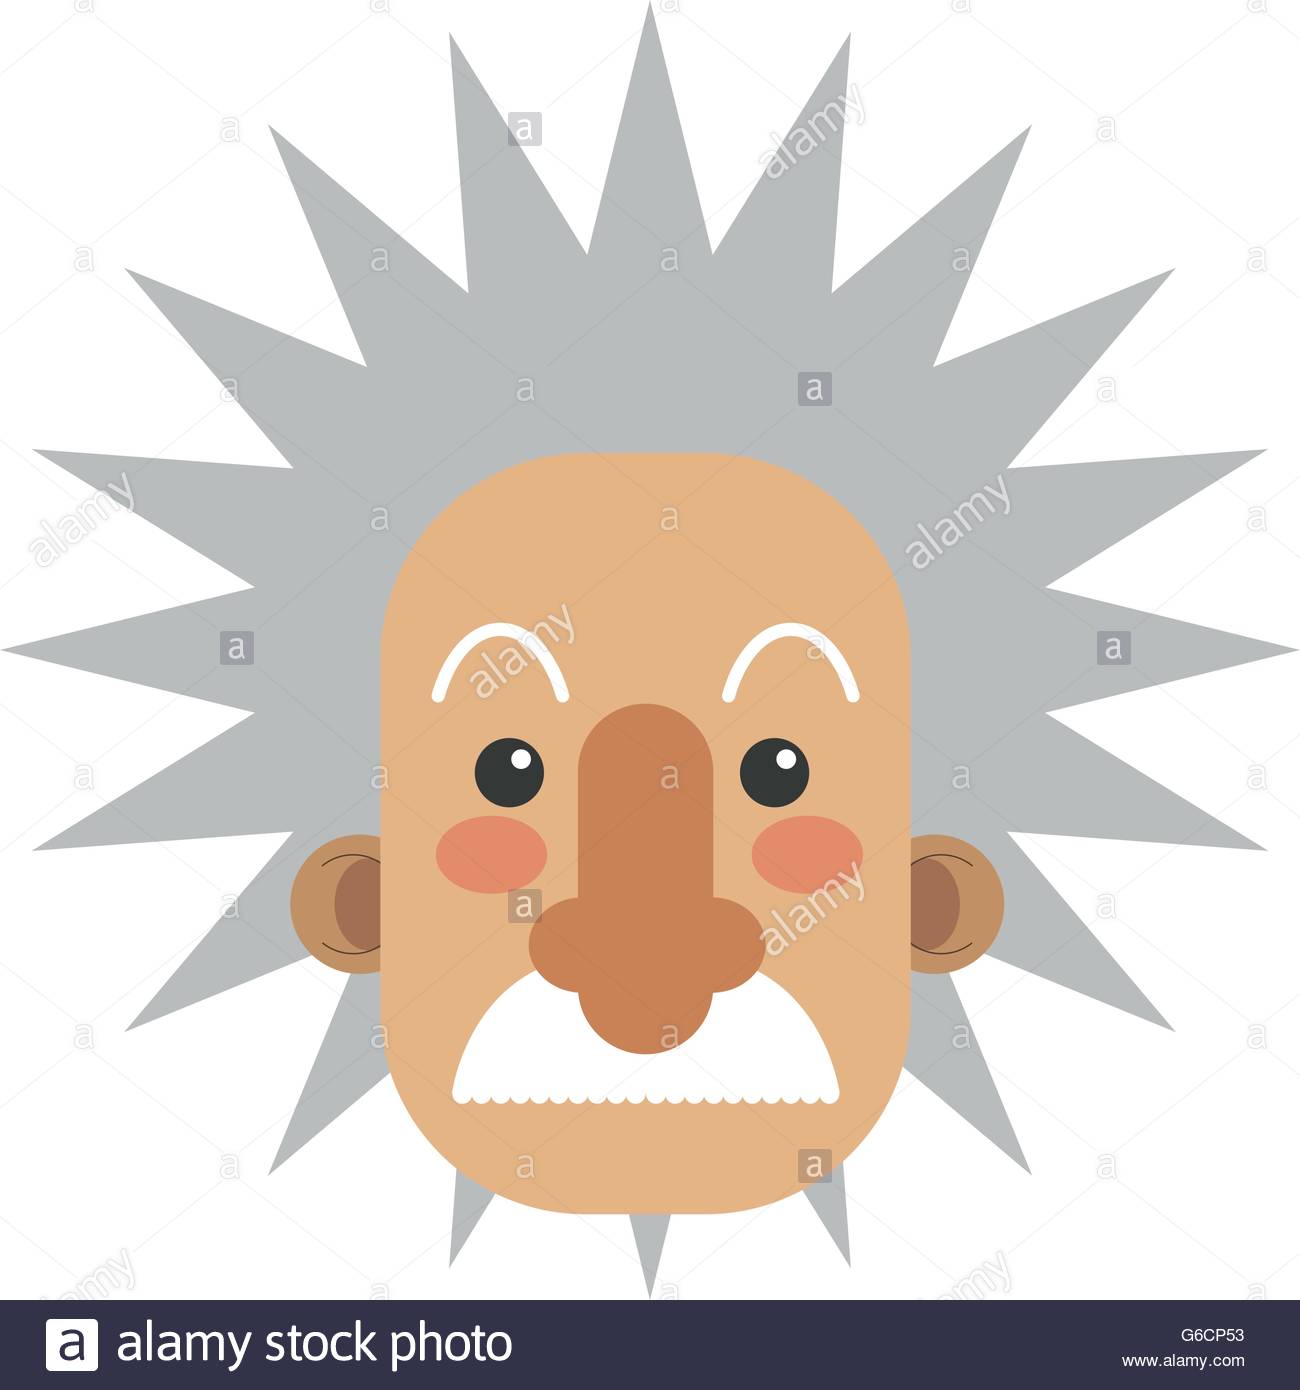 Albert-einstein icons | Noun Project